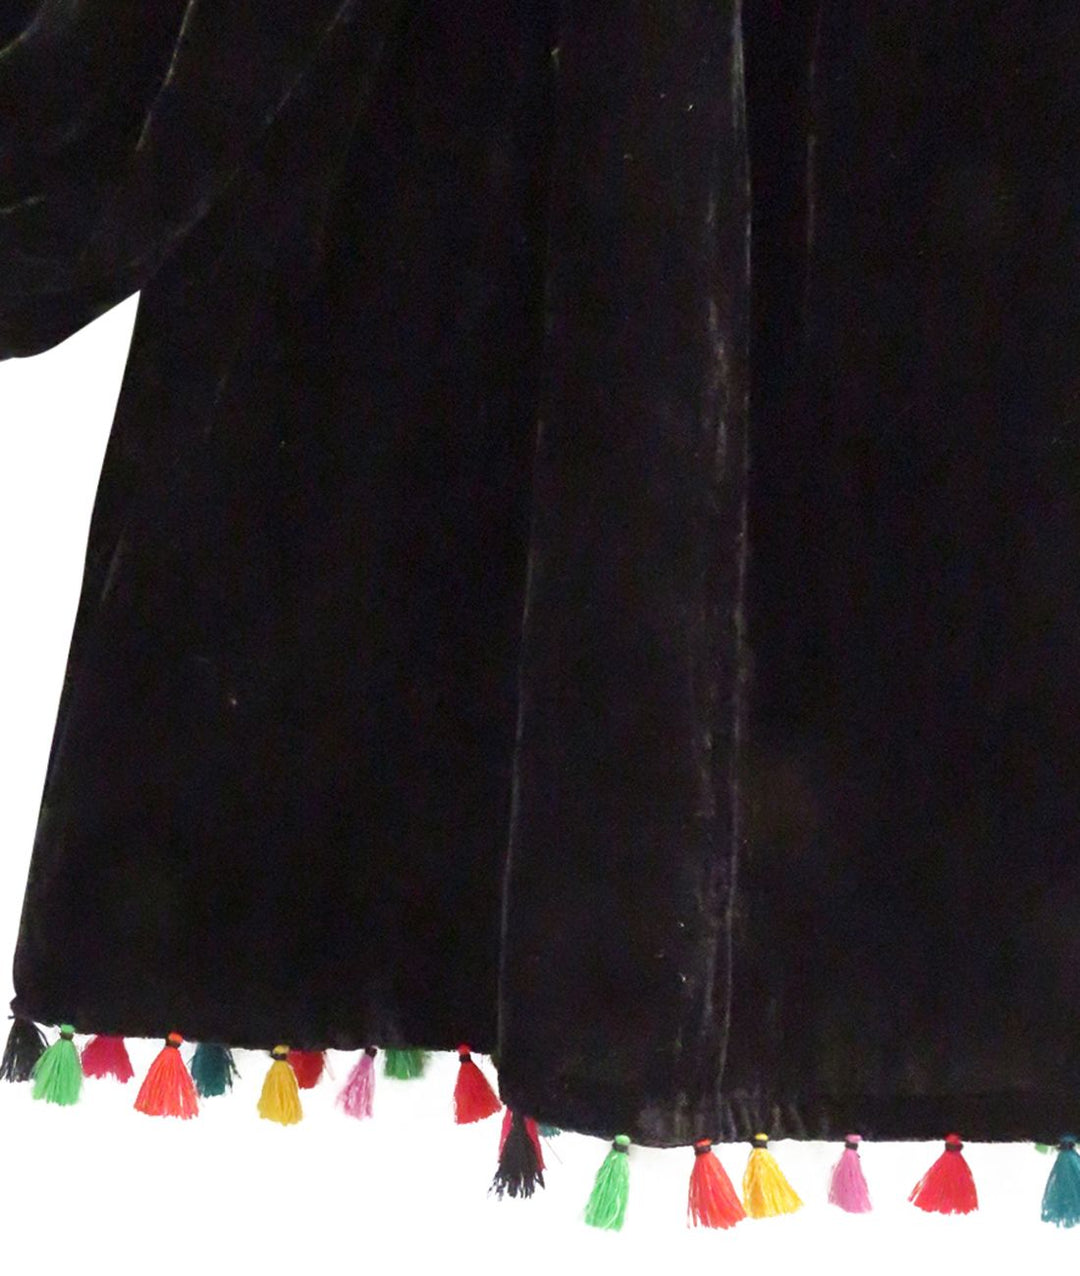 Children's Silk Velvet Tassel Dress